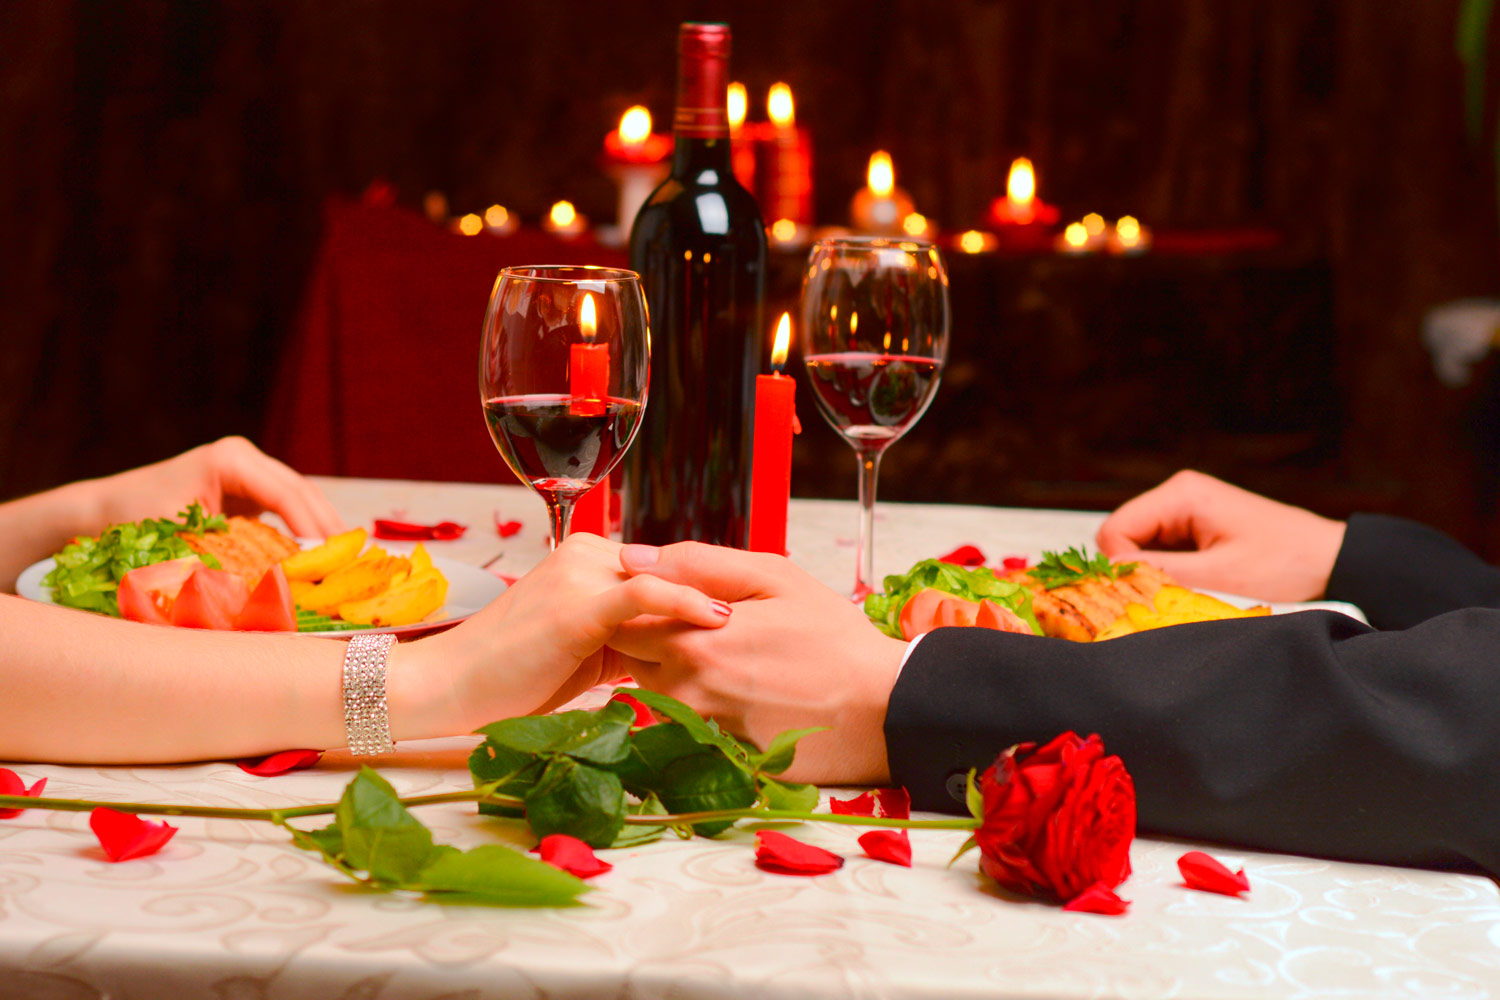 Regalo Per San Valentino Idee Regalo Romantiche Per Lui E Per Lei Irpot